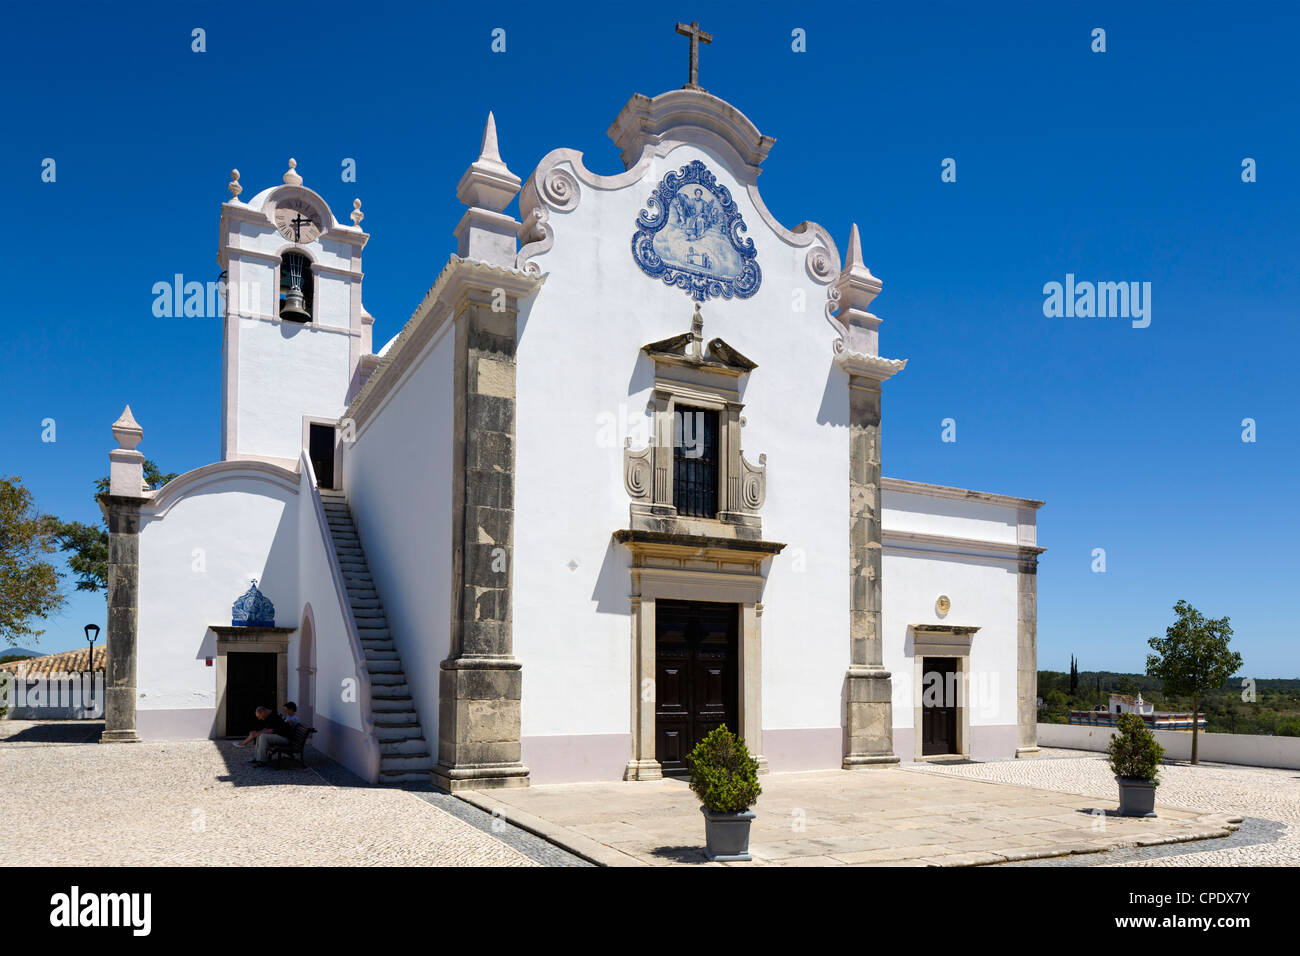 Le Xviiième siècle Église de Sao Laurenco, Almancil, Algarve, Portugal Banque D'Images